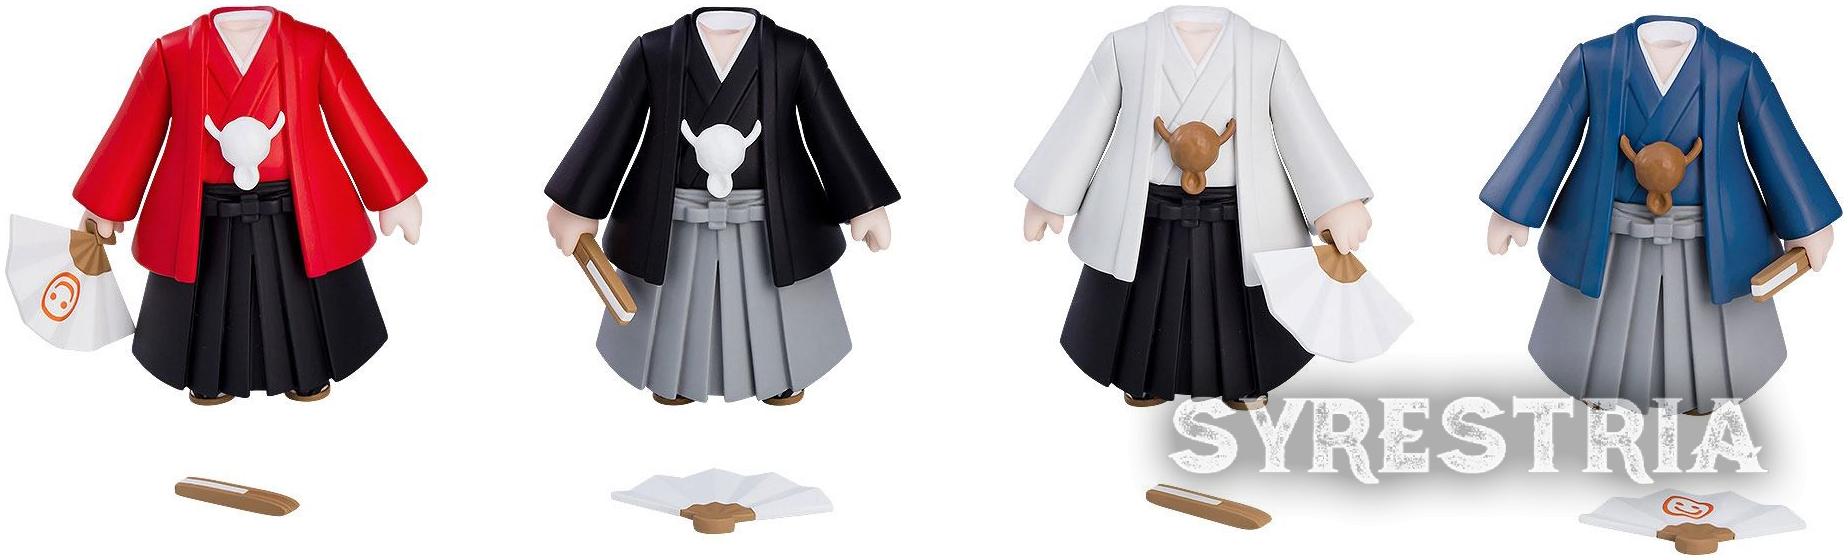 Nendoroid More Zubehör-4er-Set für Nendoroid Actionfiguren Dress-Up Coming of Age Ceremony Hakama